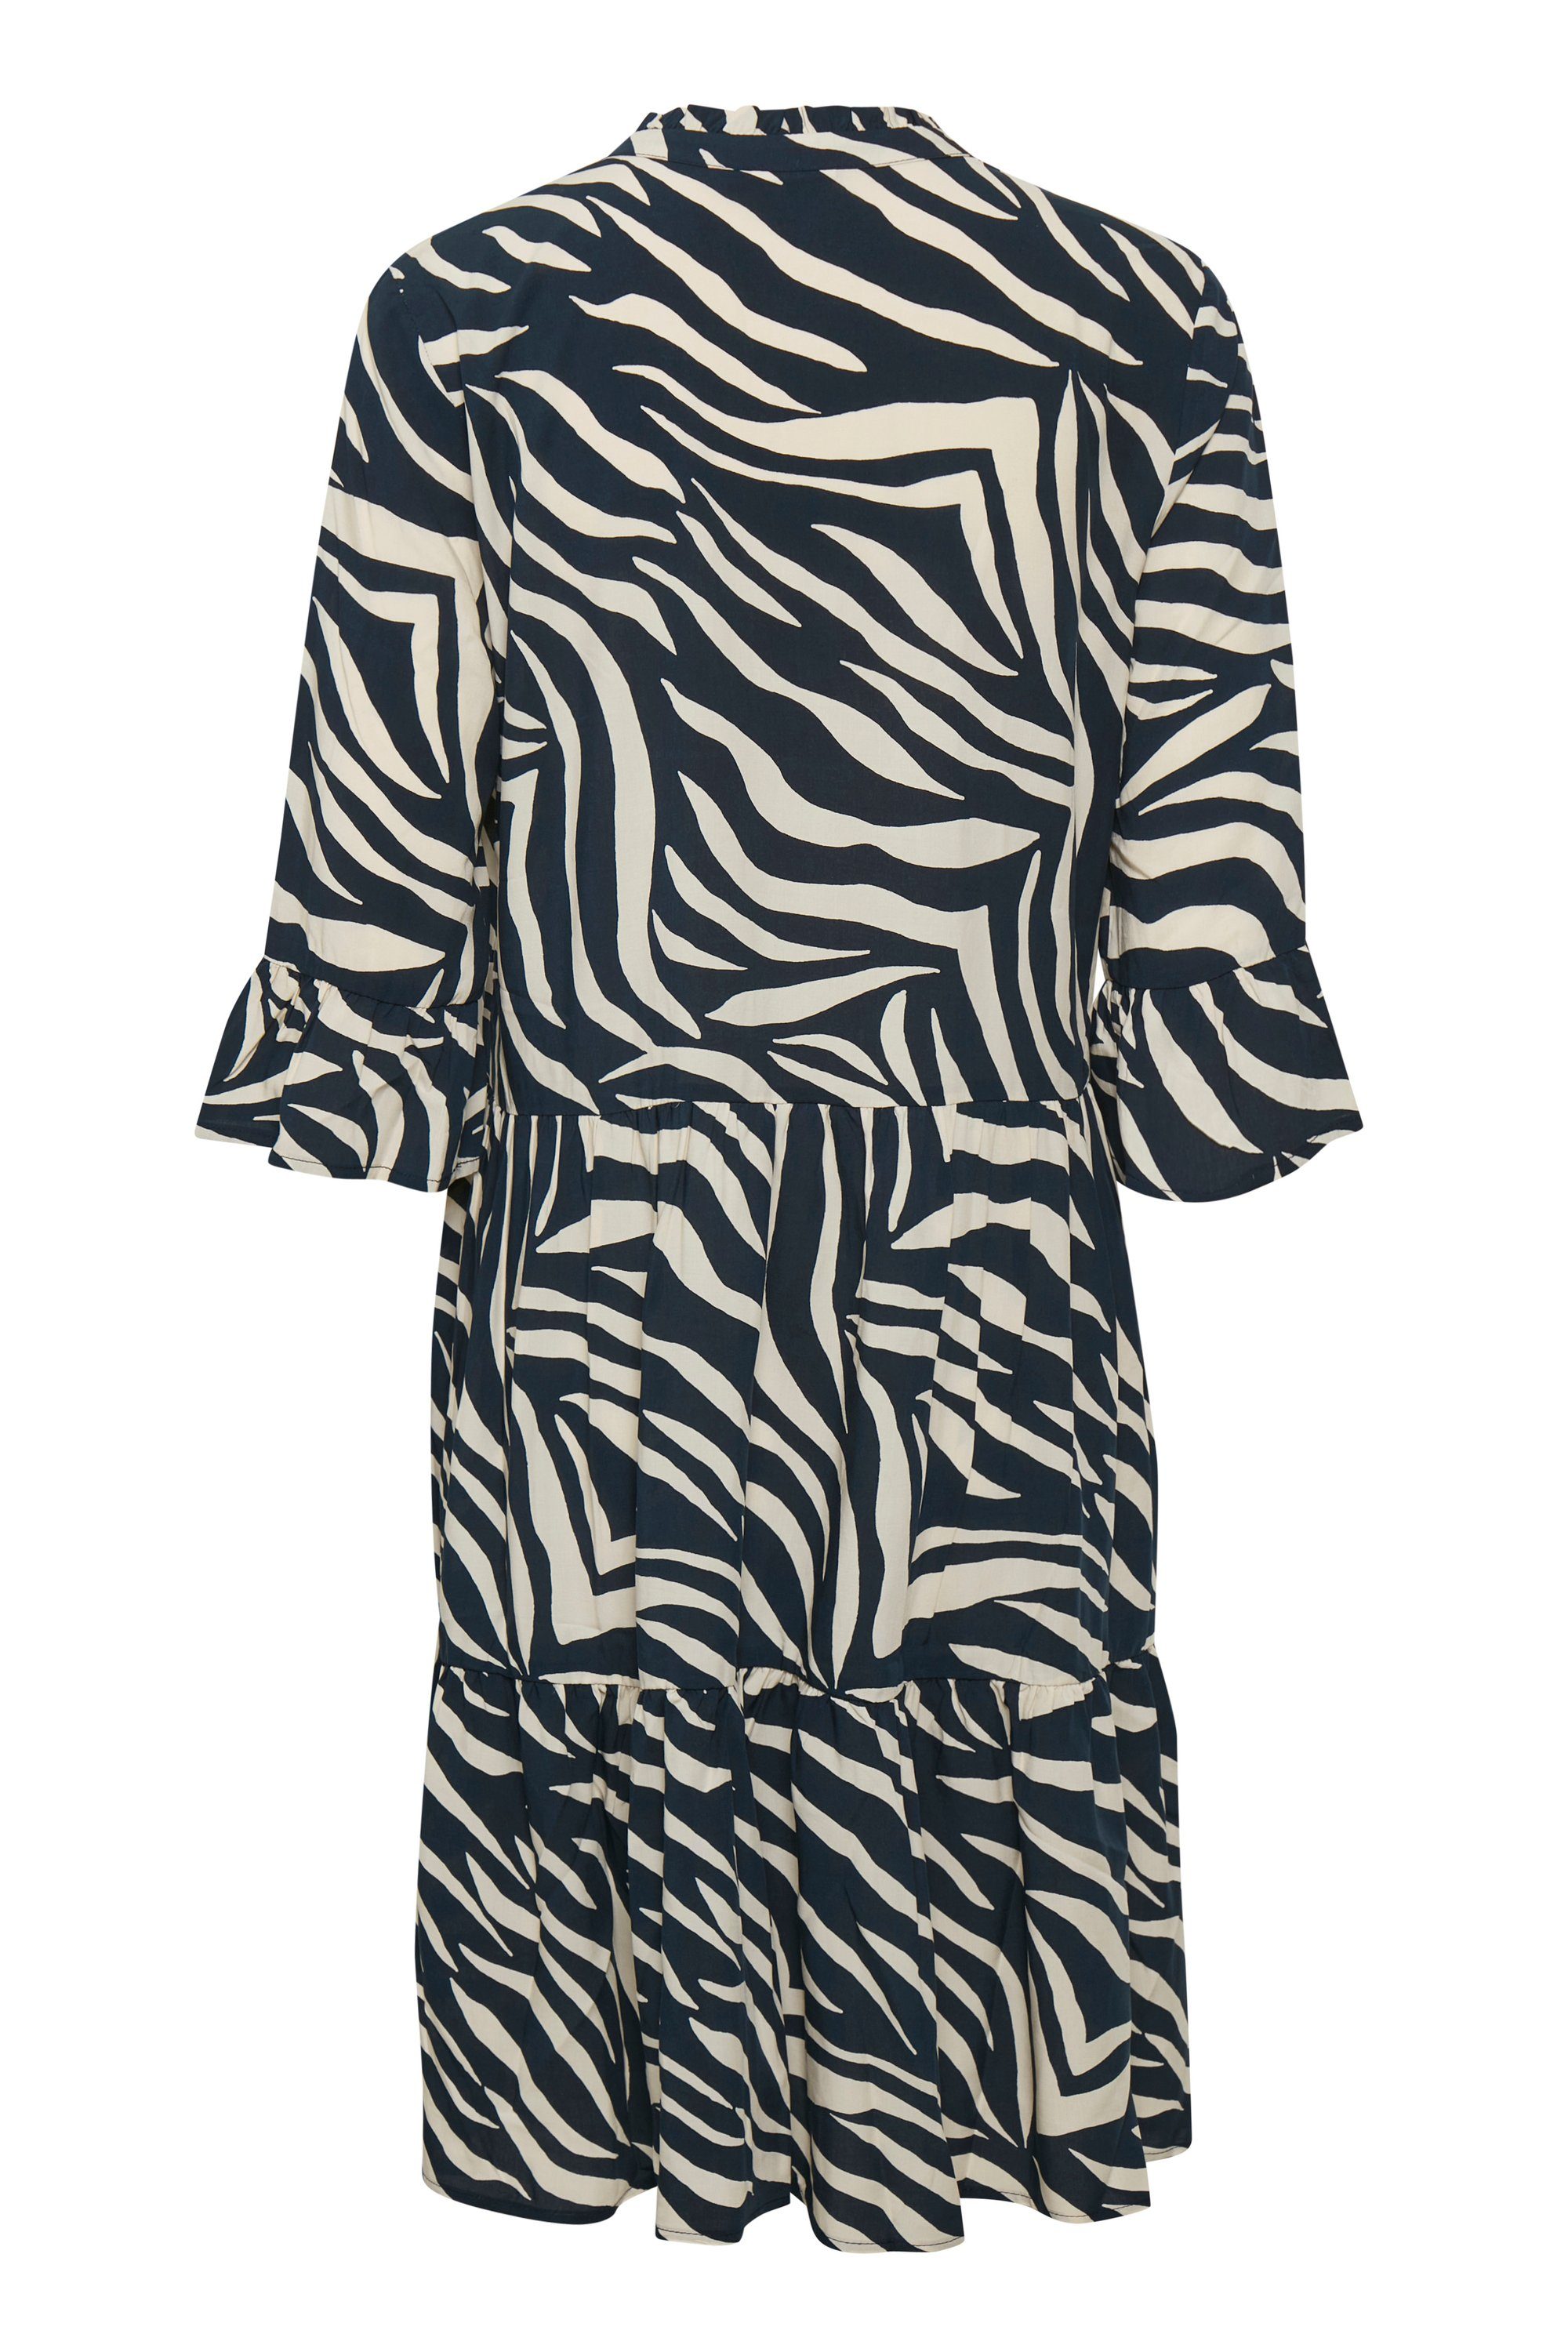 Saint Tropez Jerseykleid EdaSZ Skin Eclipse Total Dress Zebra